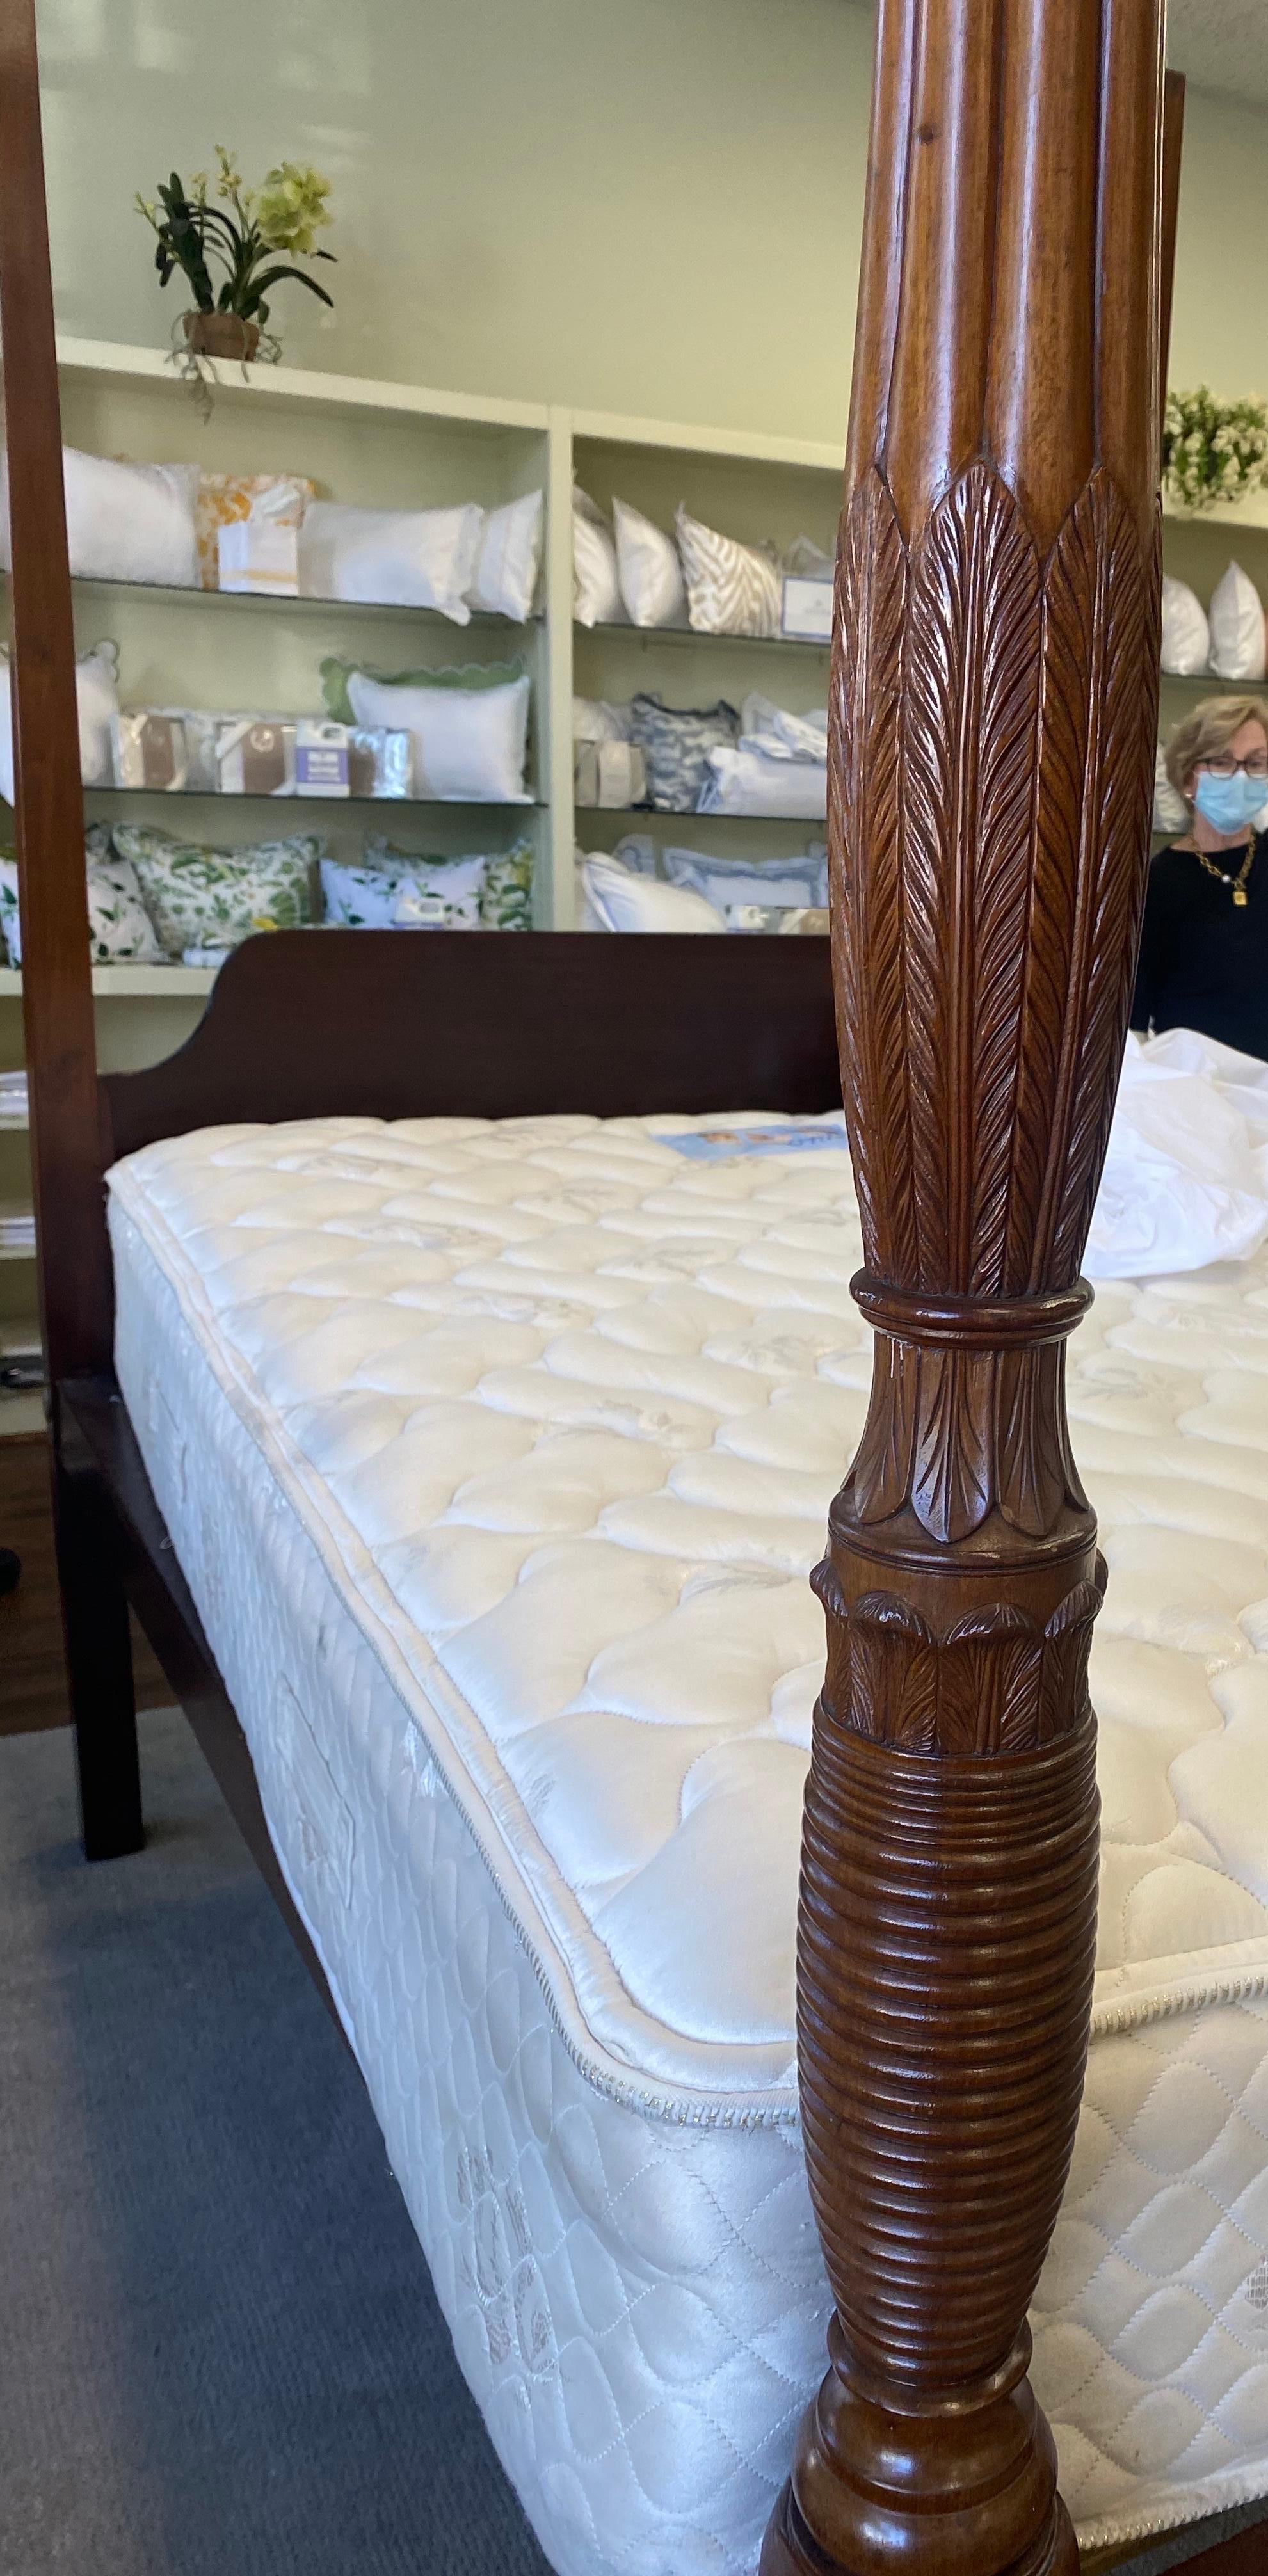 Großartiges Mahagoni-Bett aus dem 18. Jahrhundert mit vier Säulen, wahrscheinlich aus Charleston. Hochwertige, handgeschnitzte Federn und Ringdrehungen an den Pfosten.

Wurde umgewandelt, um eine Queen-Size-Matratze passen.